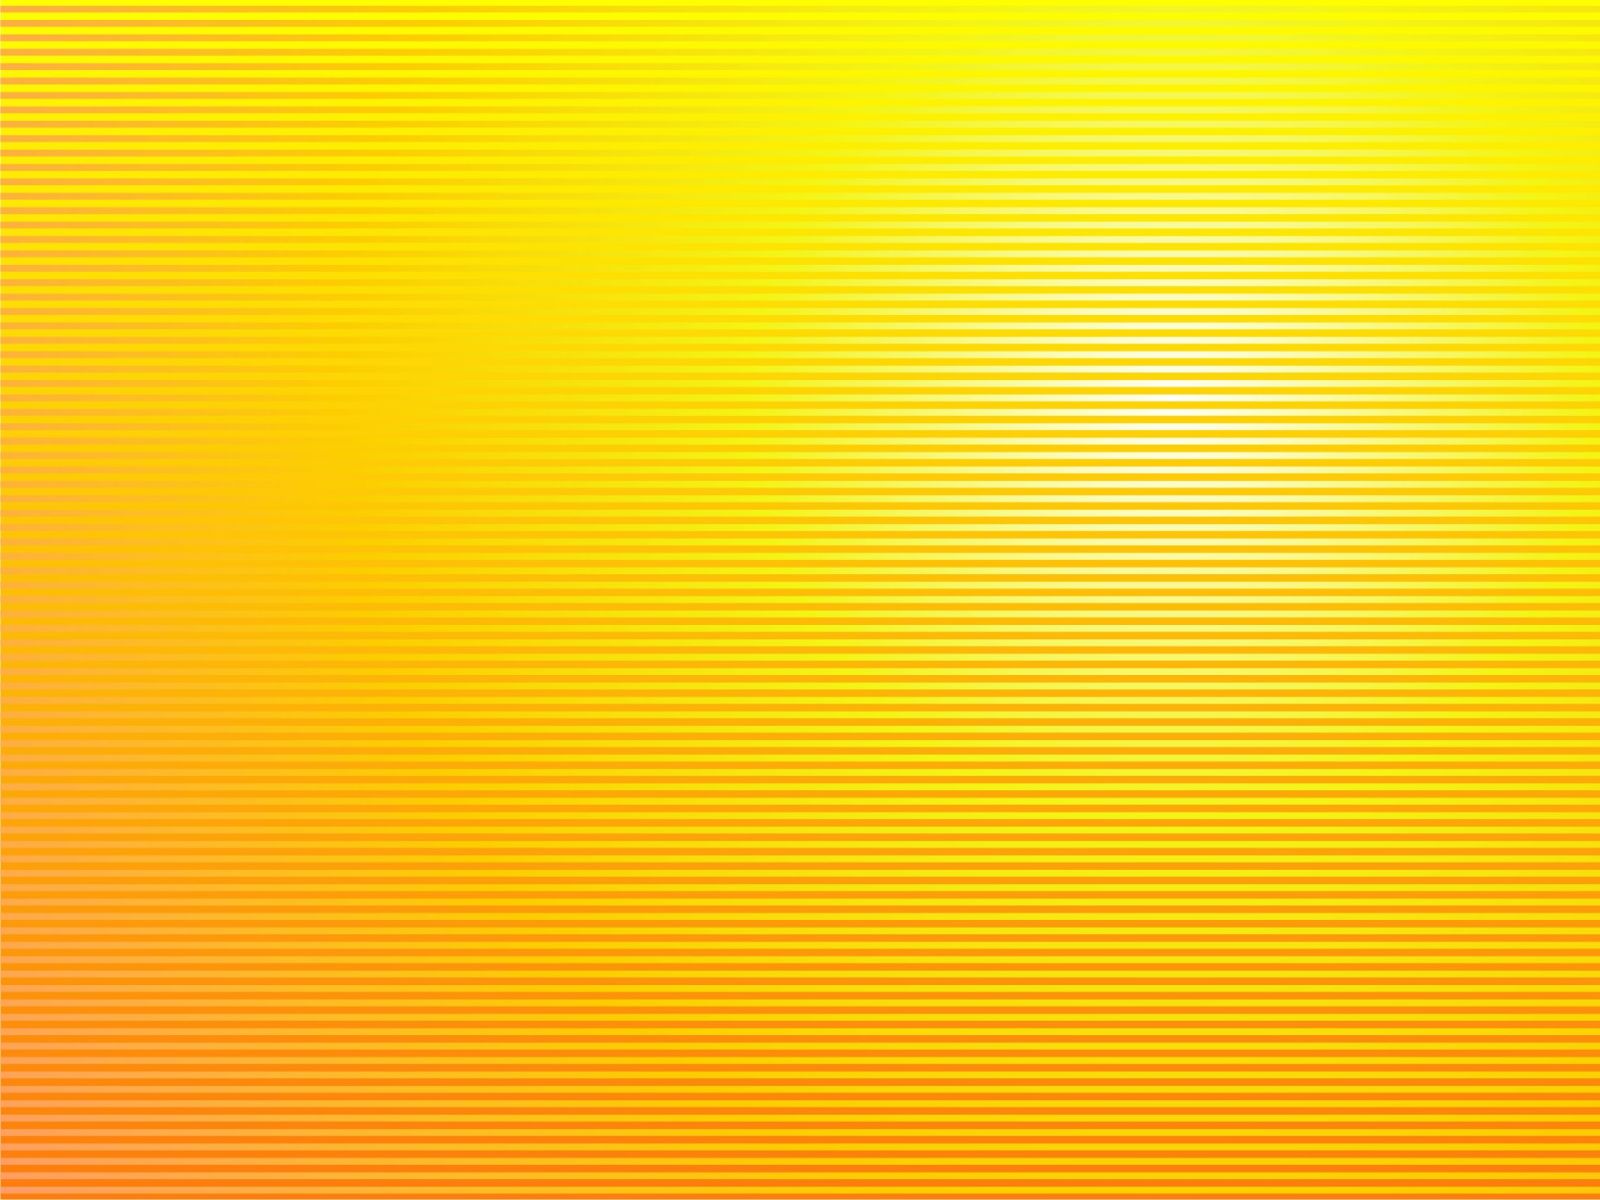 The Best Top Desktop Yellow Wallpaper